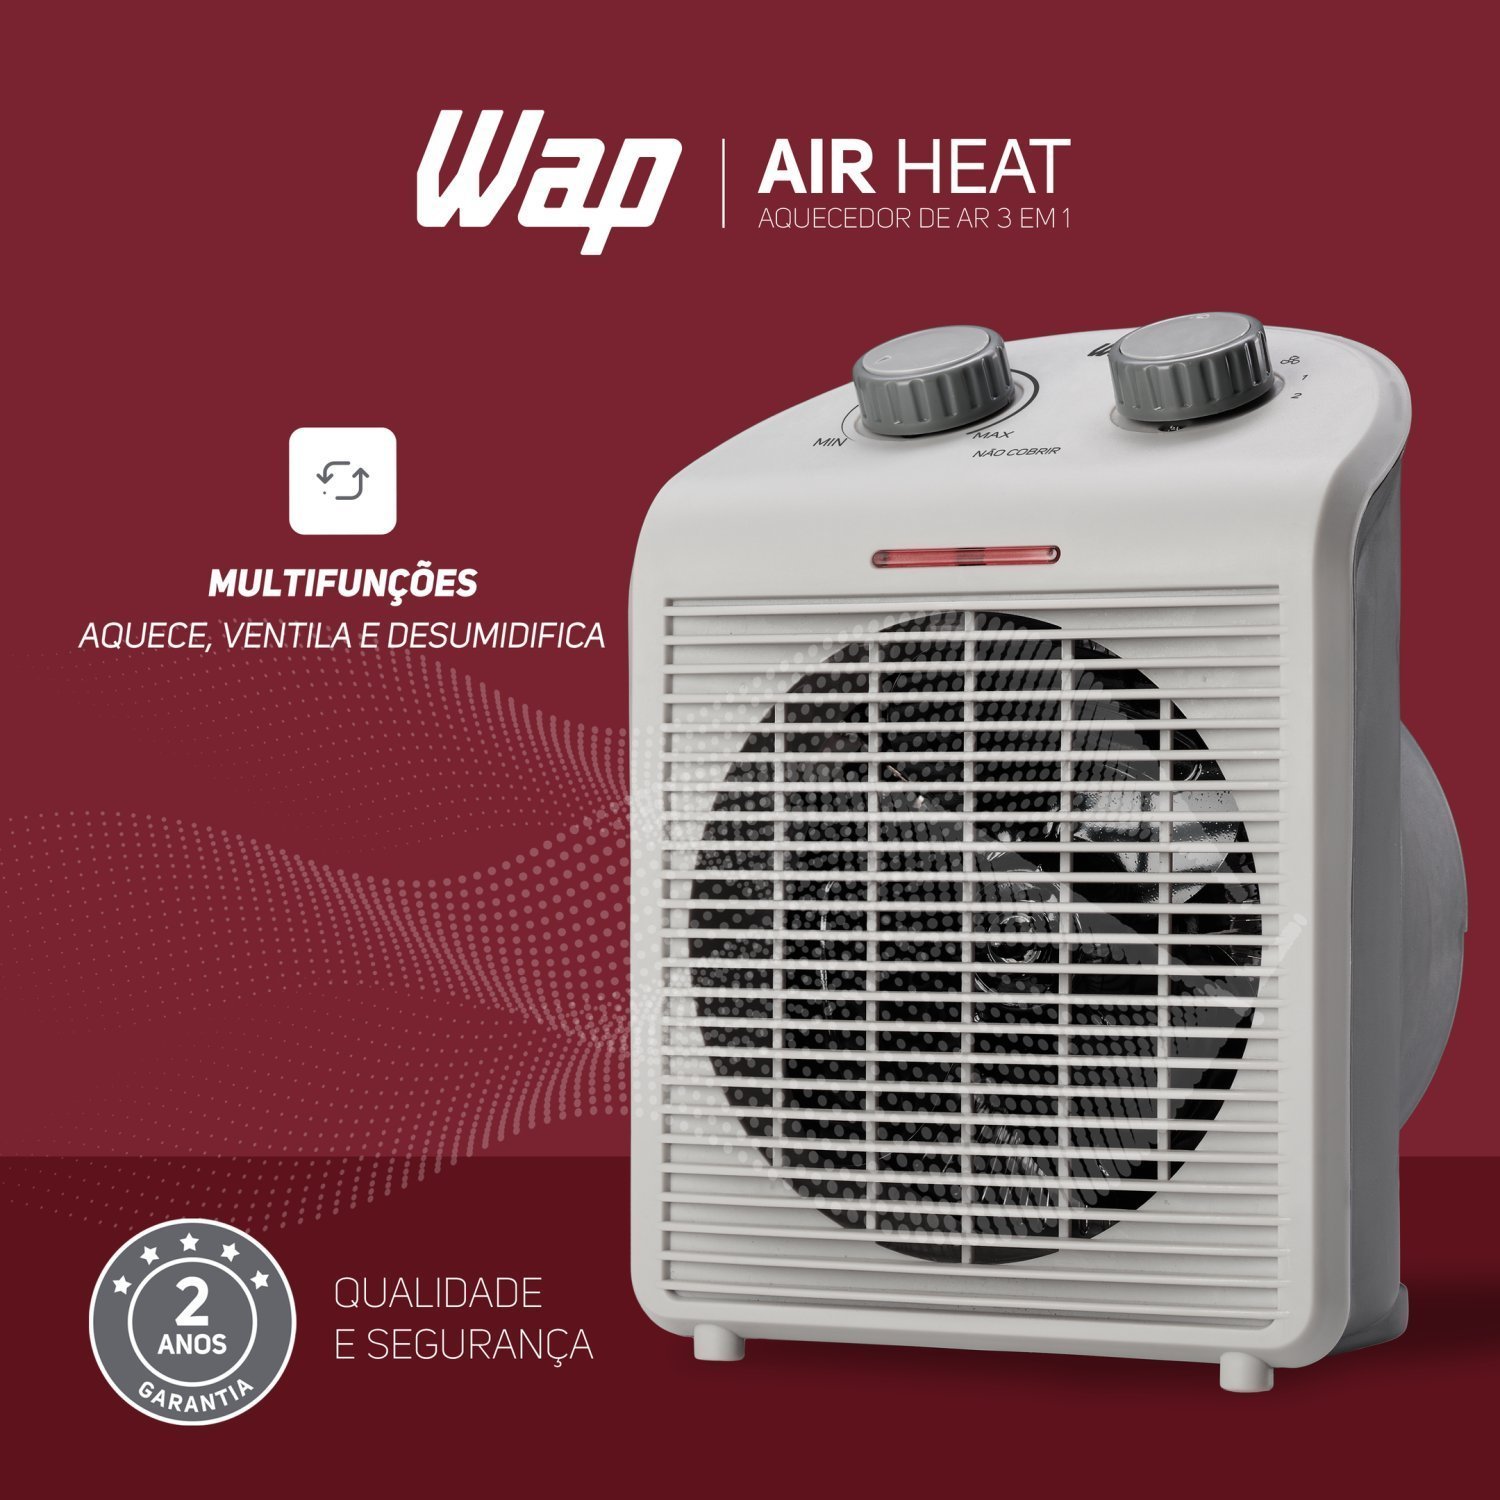 Aquecedor de Ar Portátil Air Heat 3 em 1 1500w 127v WAP Branco - 5